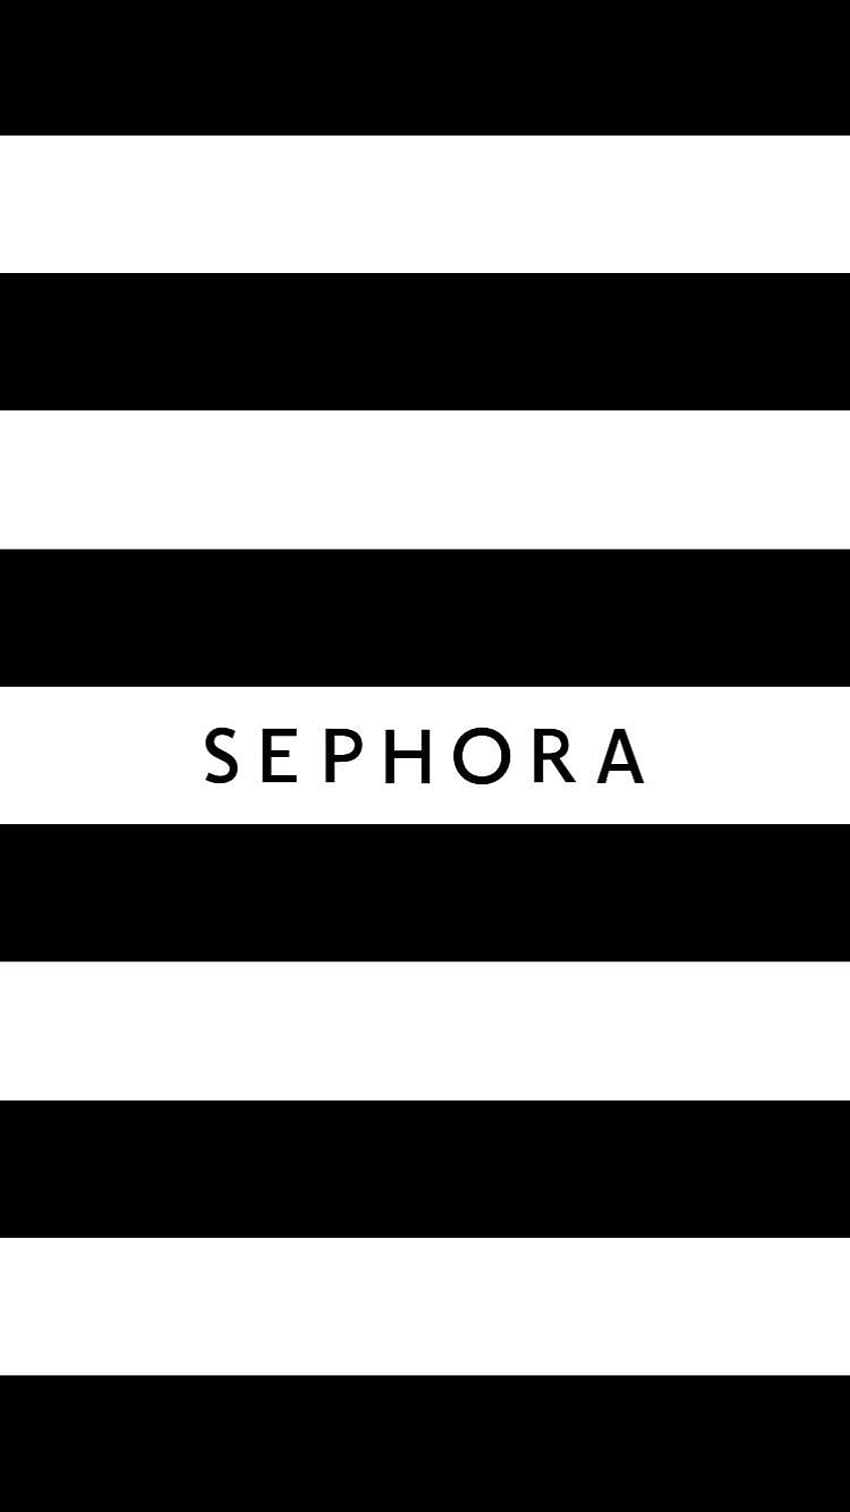 Sephora iPhone . Eyeliner Sephora, lipstik Sephora, kuas Sephora wallpaper ponsel HD